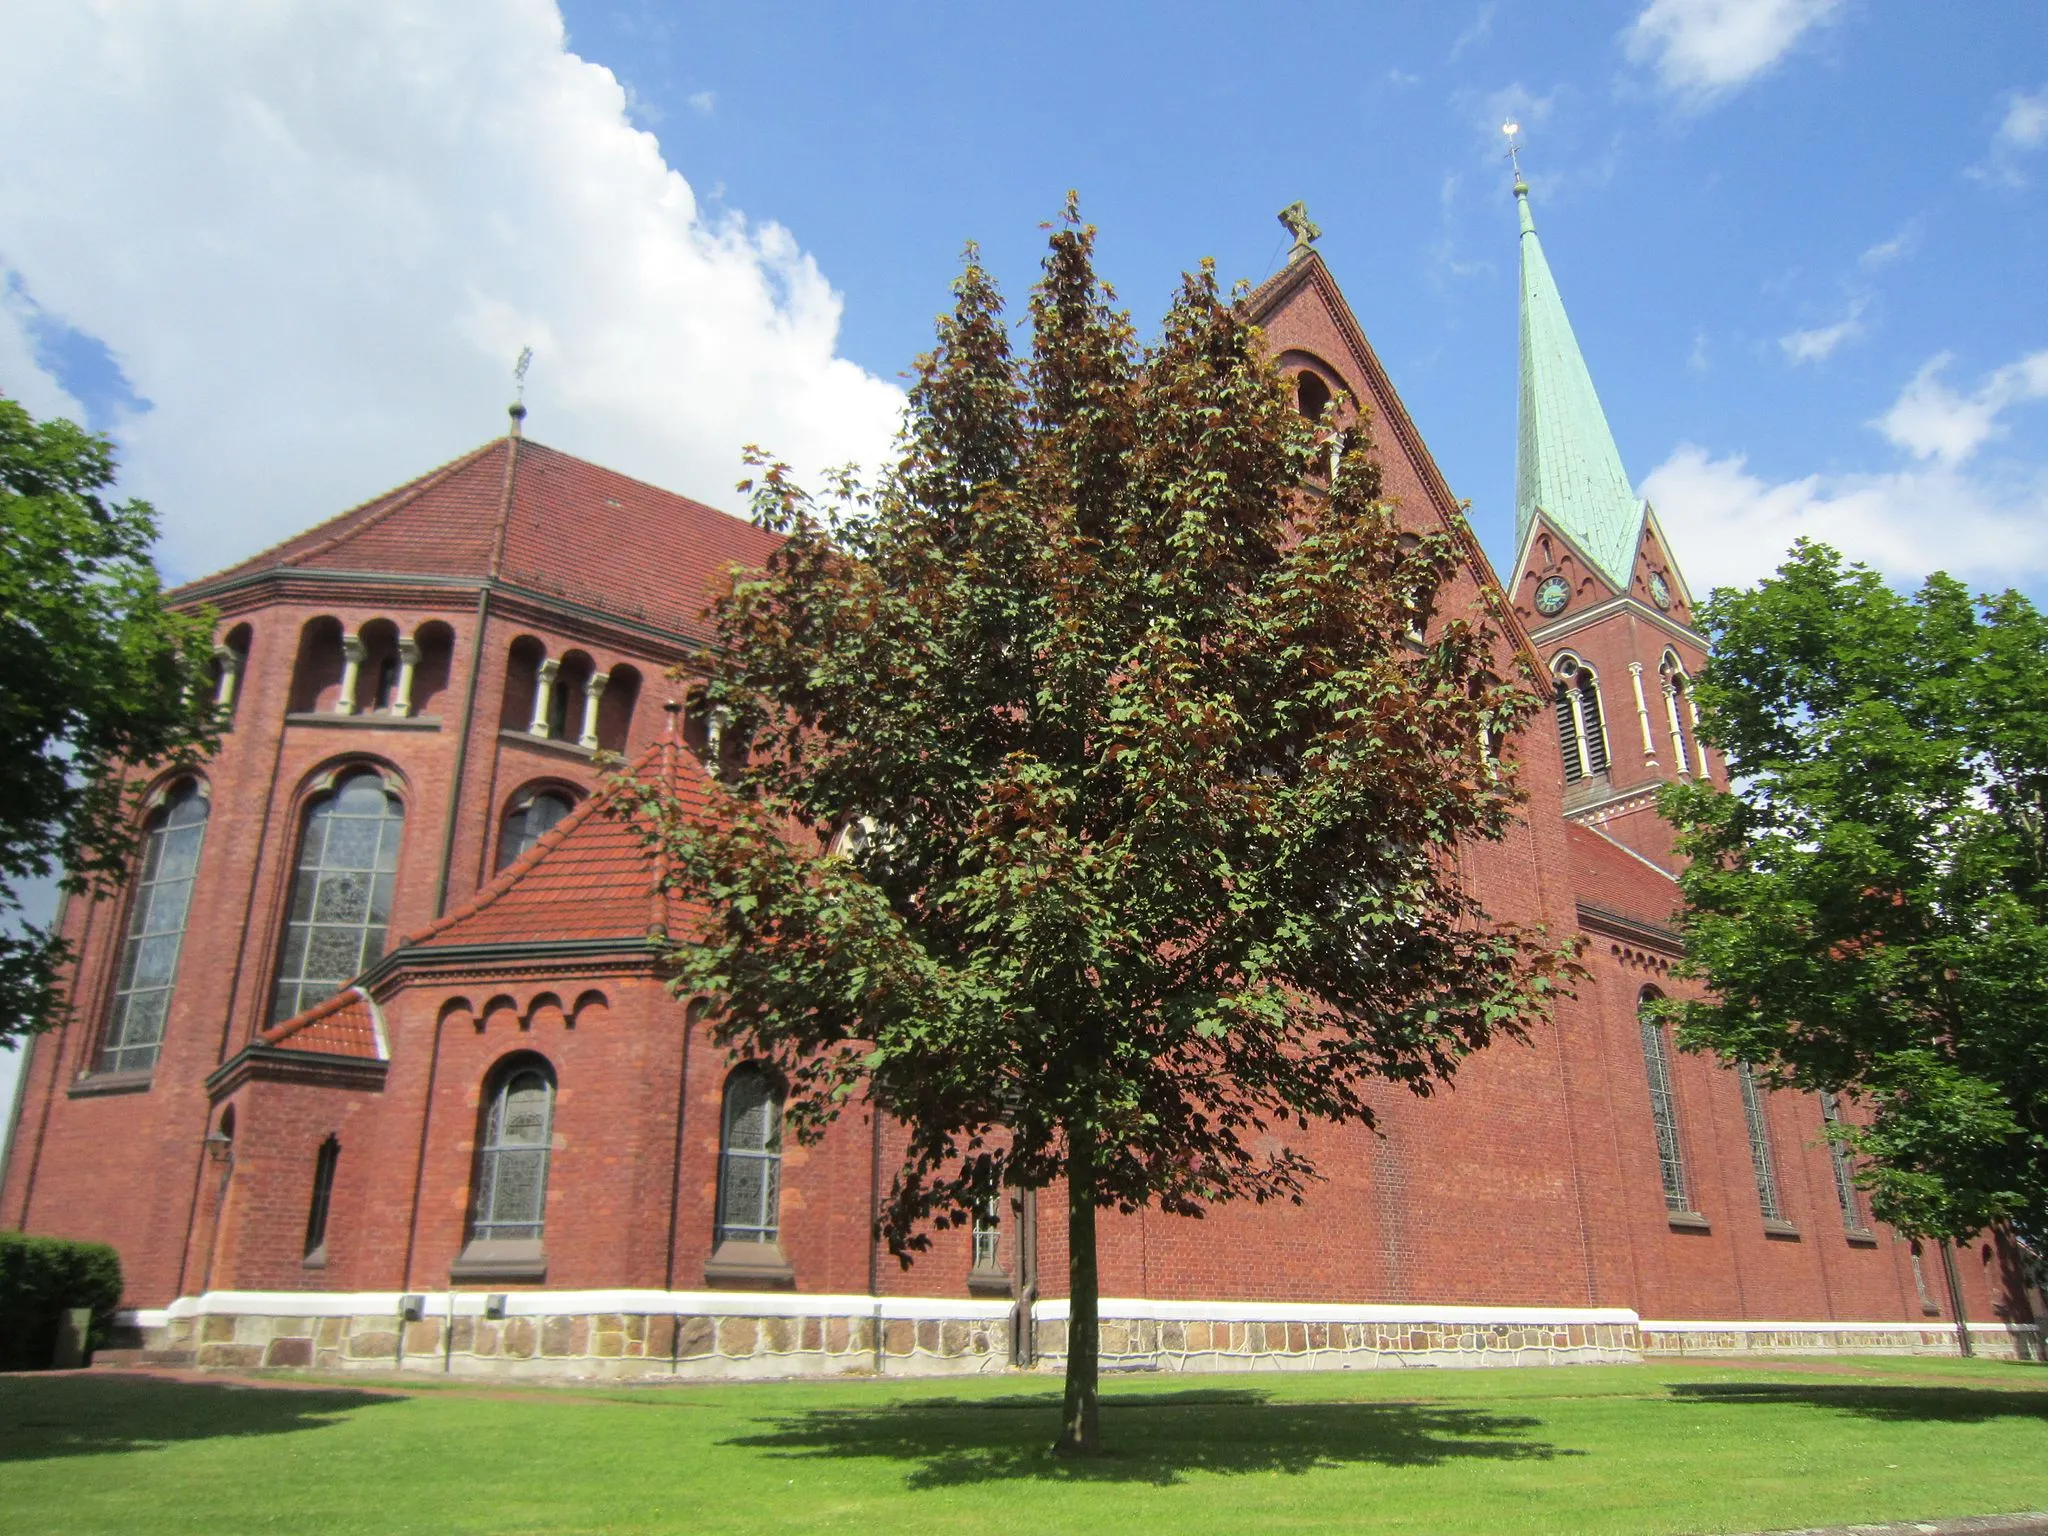 Photo showing: St. Gorgonius Church in Goldenstedt